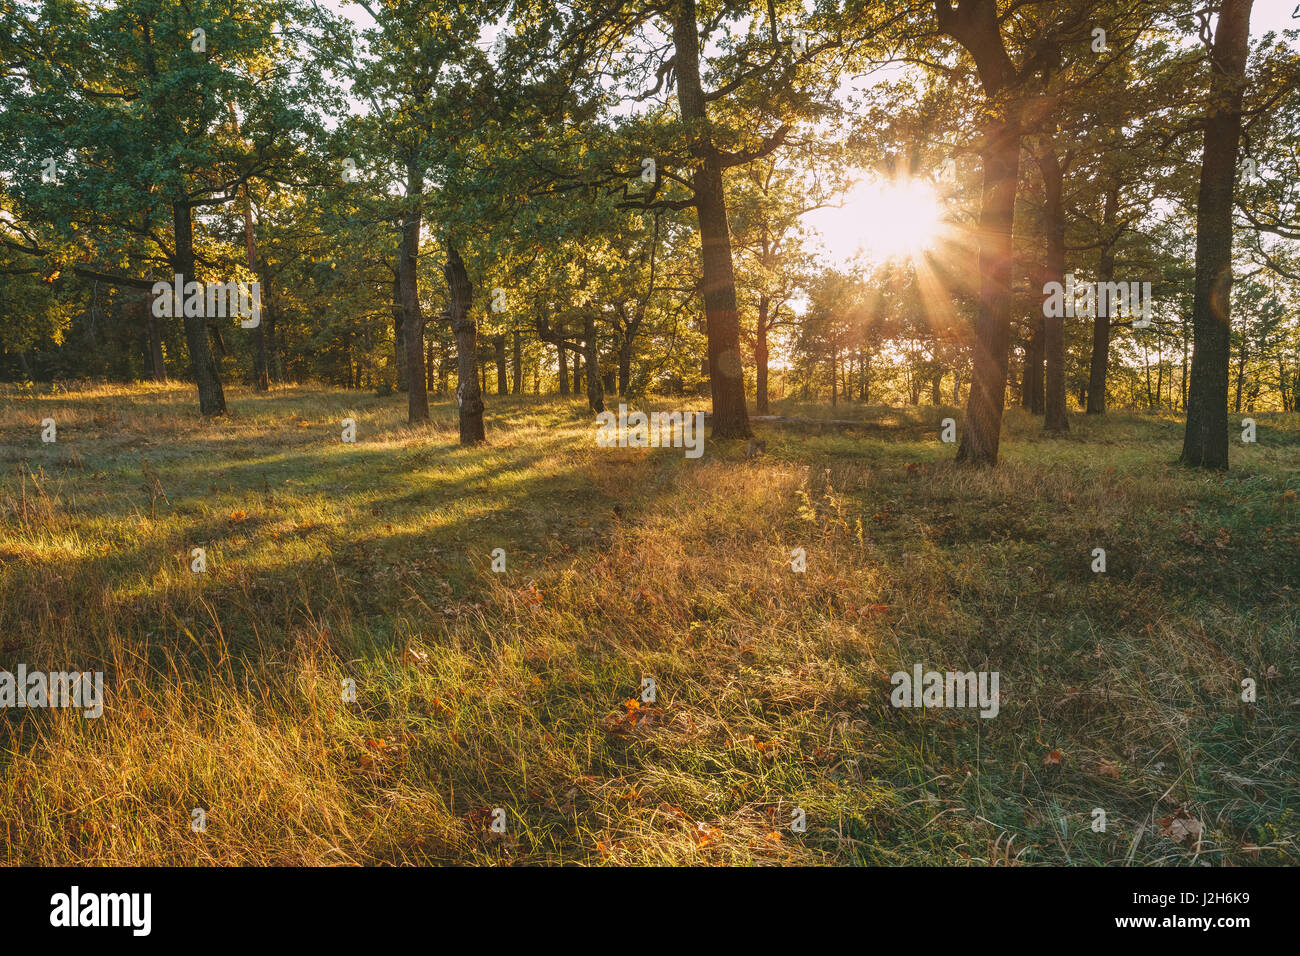 Sonnenauf- oder Sonnenuntergang im Herbst Waldlandschaft. Sonne Sonnenschein mit natürlichem Sonnenlicht und Sonnenstrahlen durch Wald Bäume im Sommer Wald. Schöne landschaftliche V Stockfoto